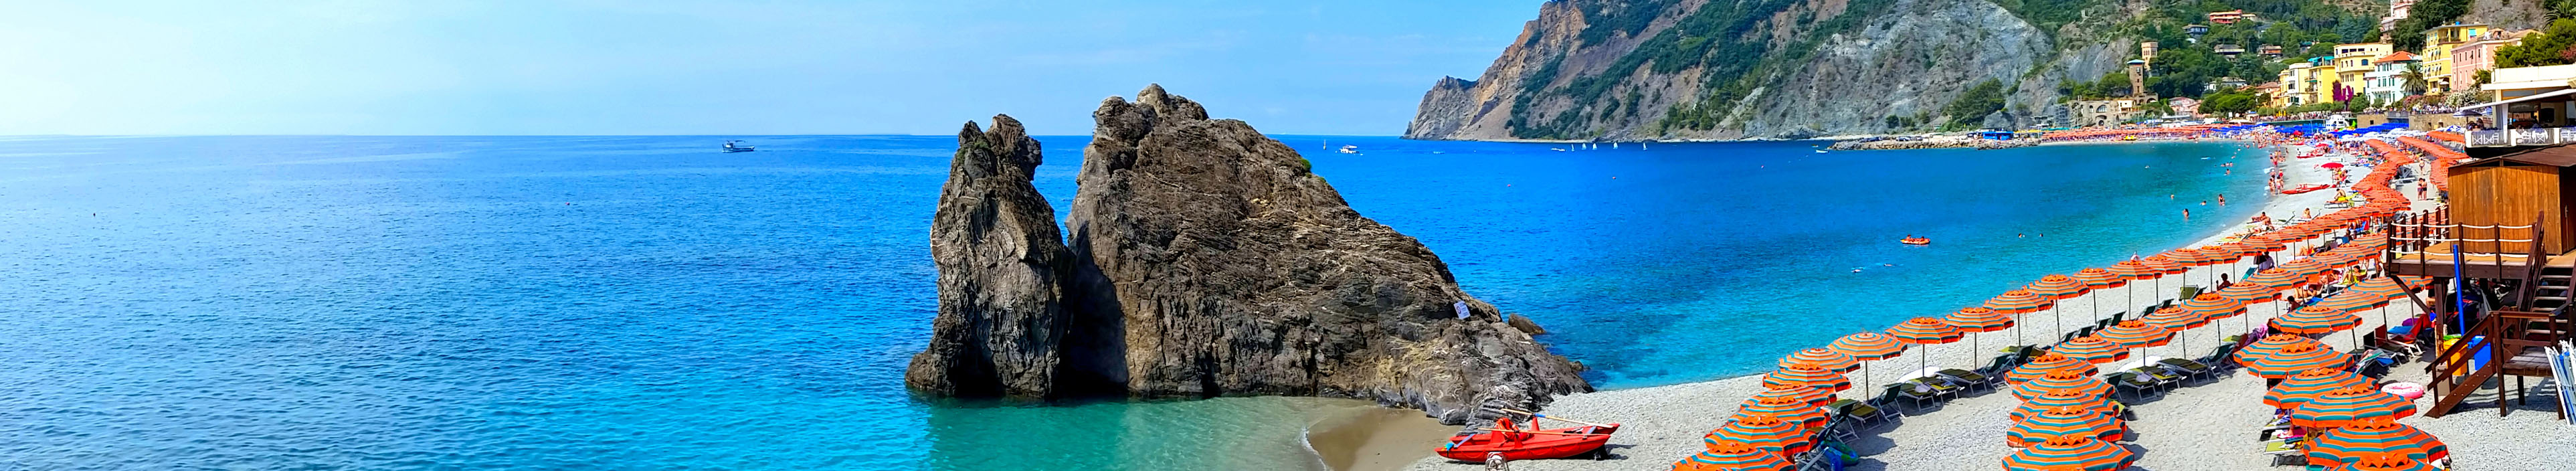 Strand mit Sonnenschirmen in Italien.